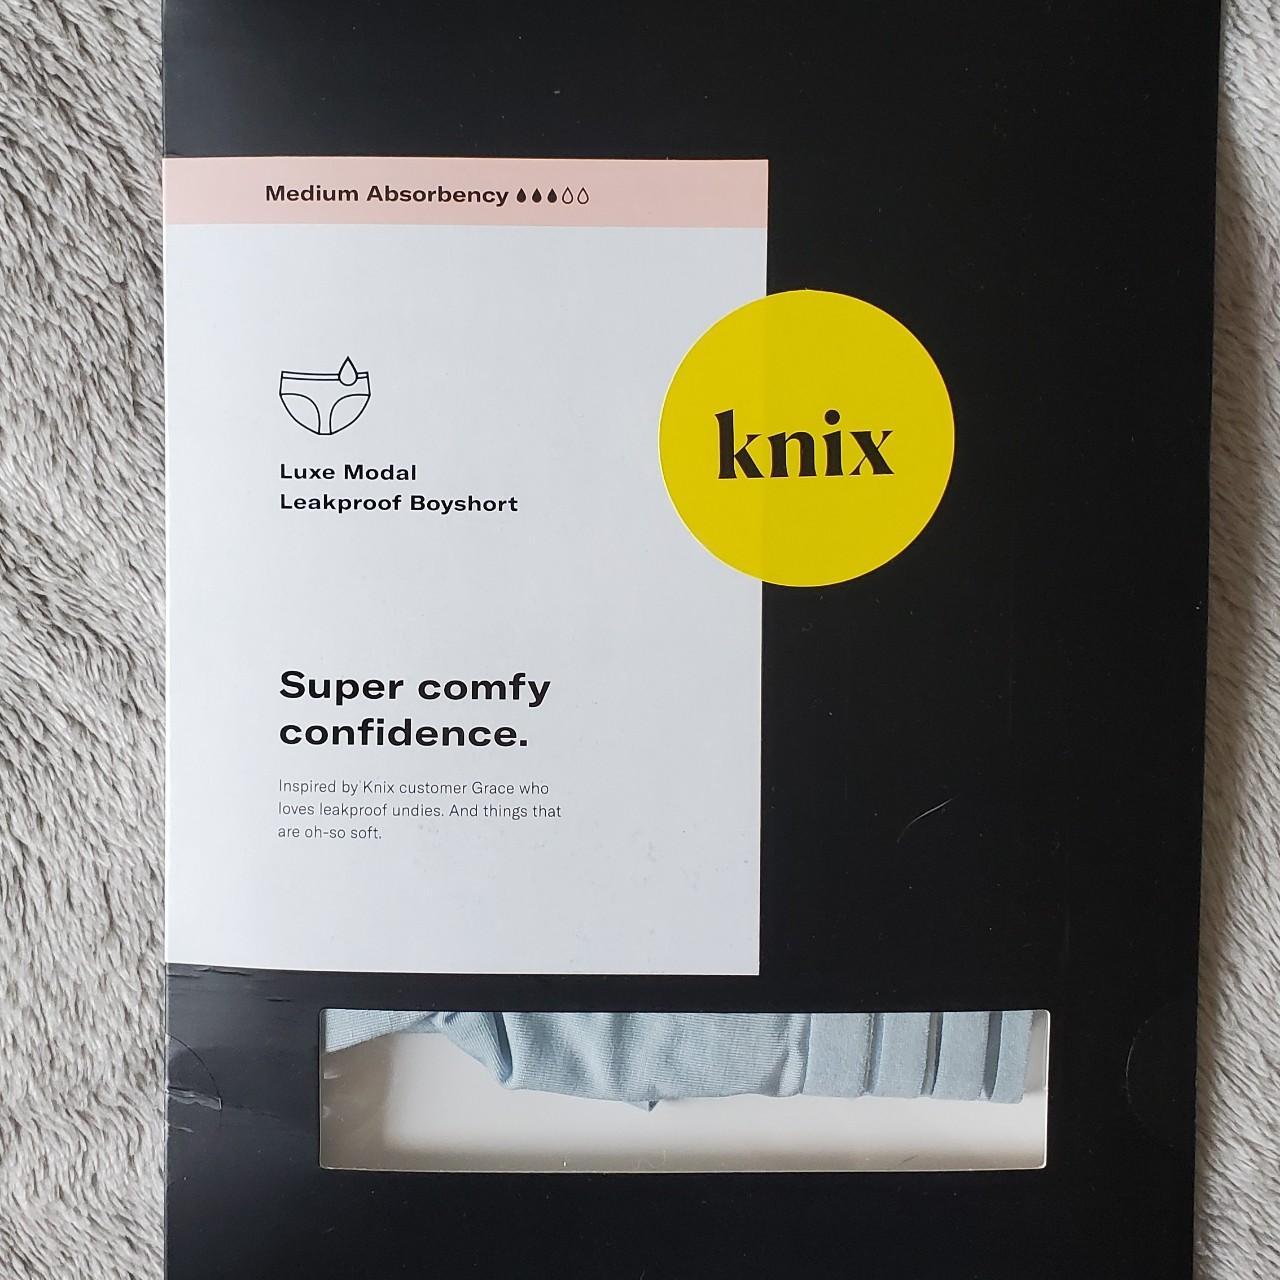 Knix Luxe Modal Leakproof Boyshort period underwear